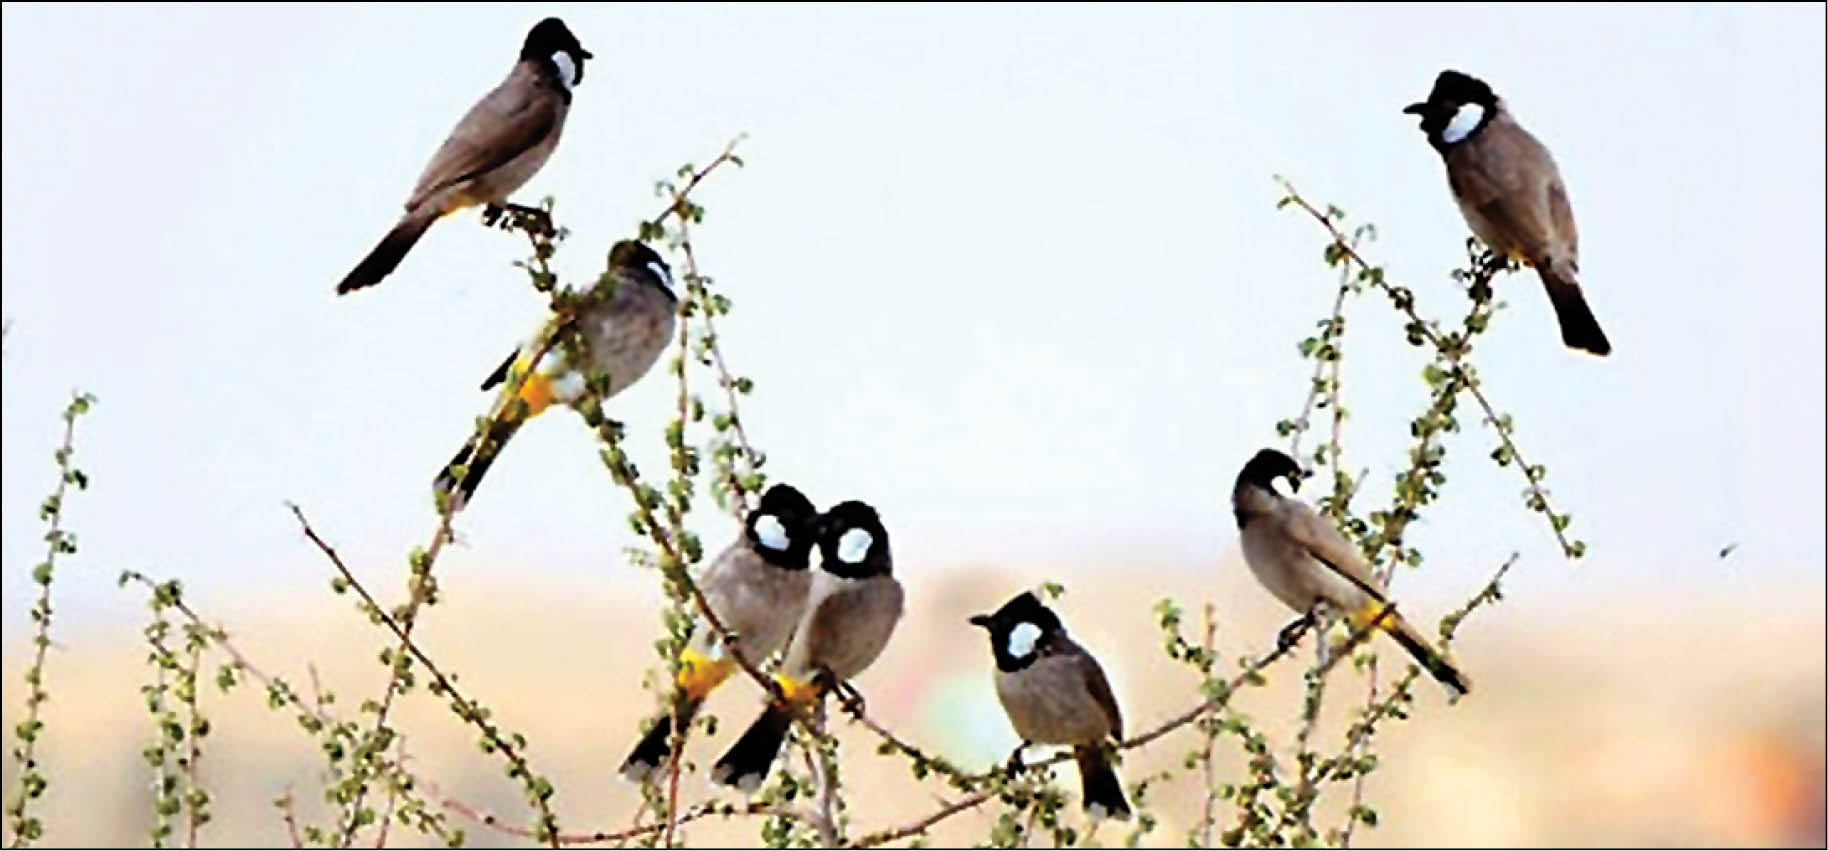 تجارت پرندگان زینتی حمایت نشده آزاد است